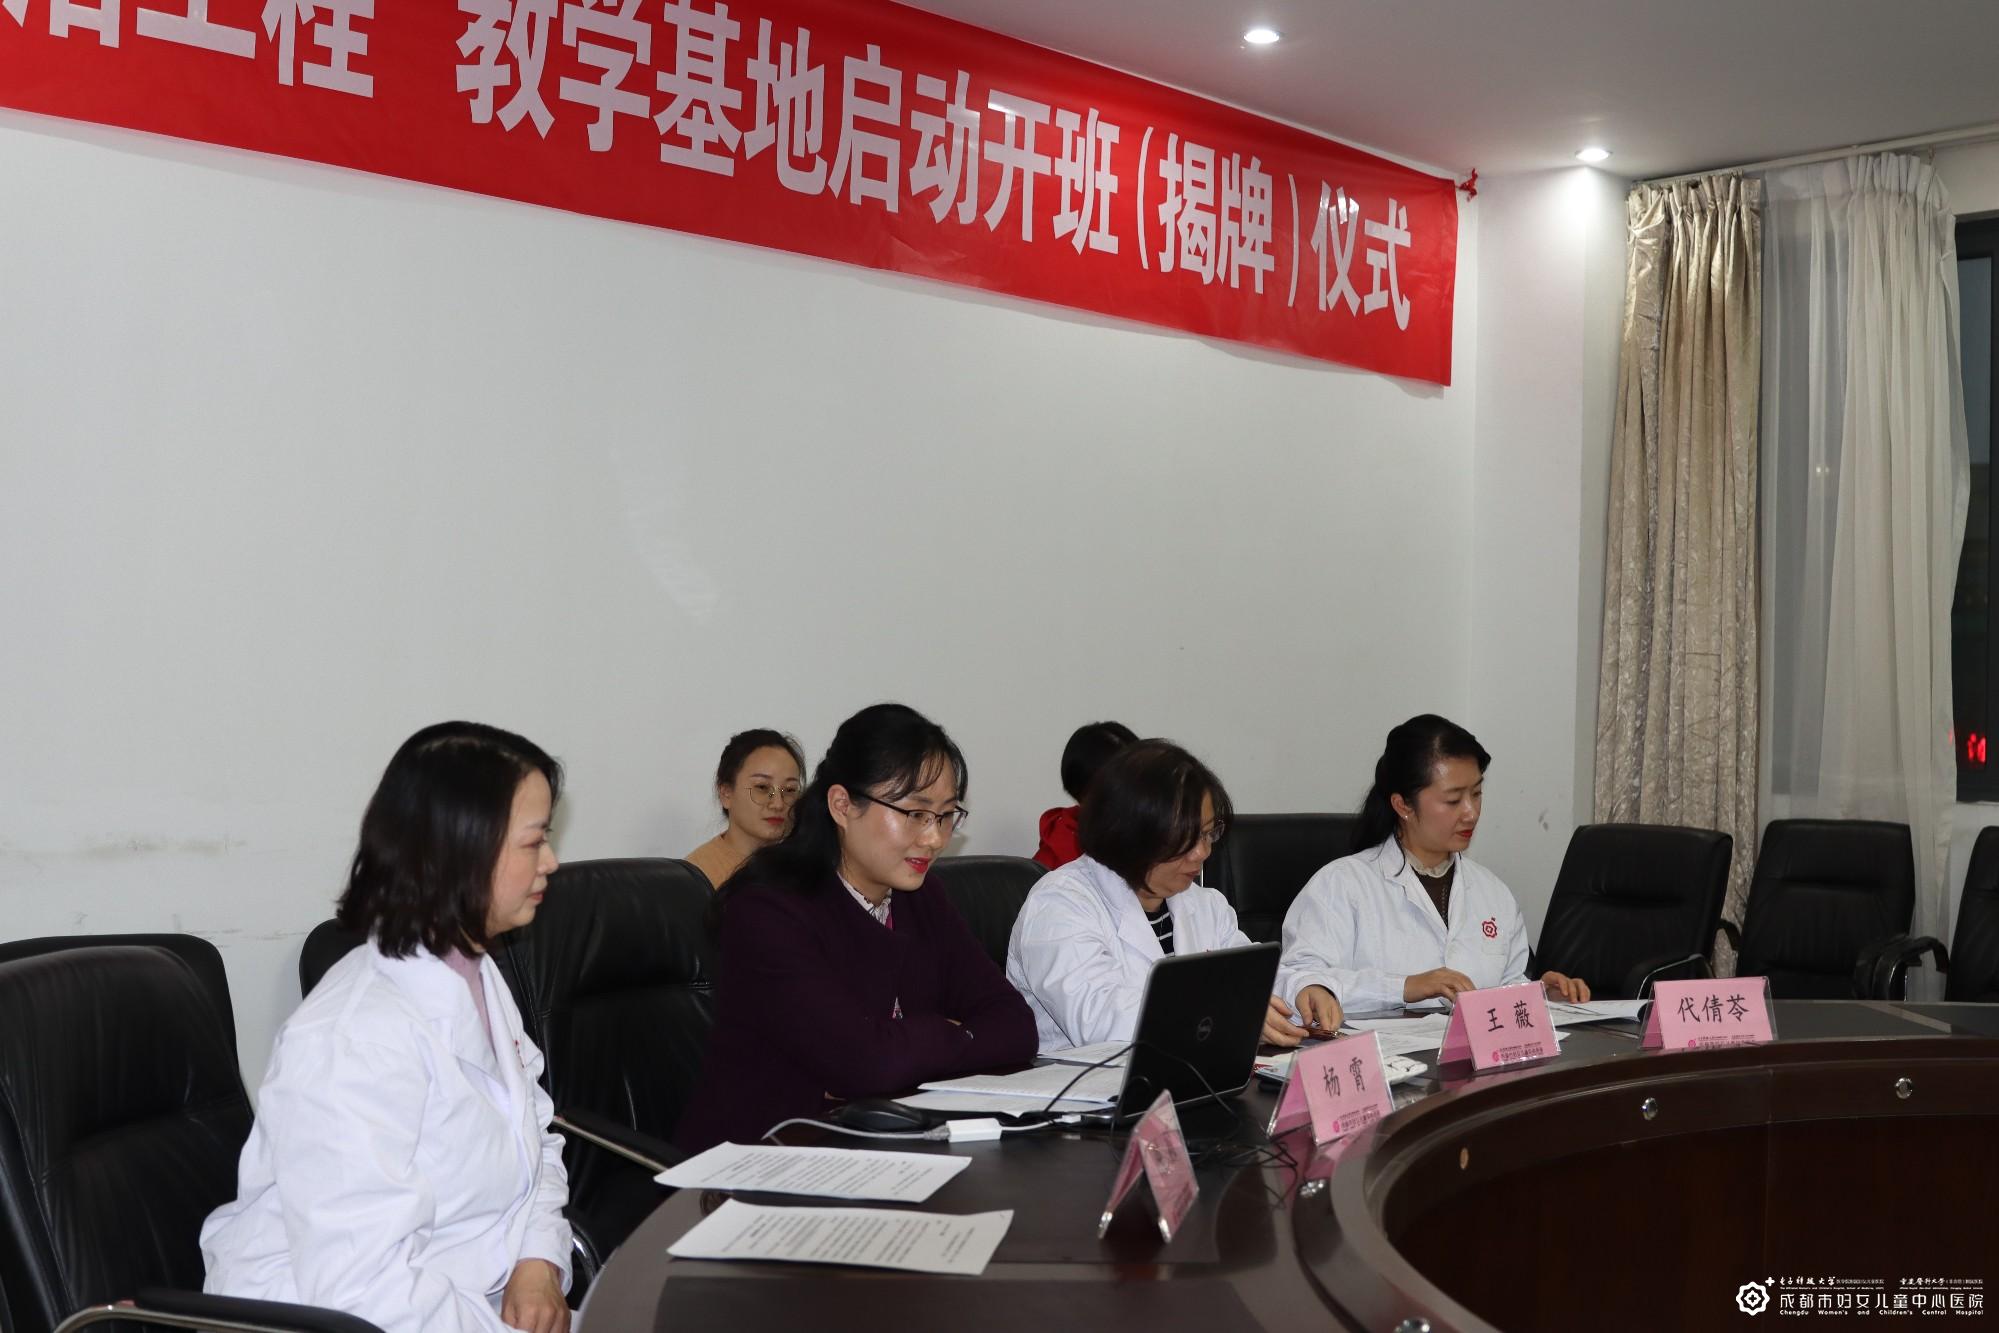 我院获得“中国宫颈癌防治工程” 宫颈病变与宫颈癌防治专项技术教学培训基地称号